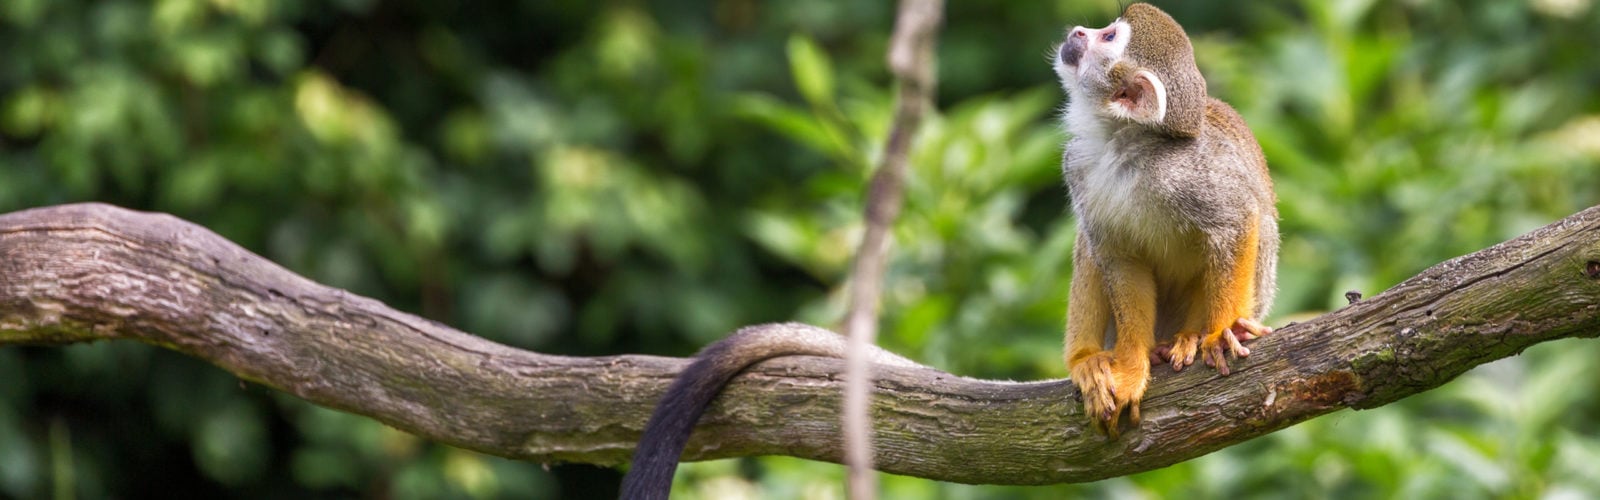 colombia-amazon-monkey